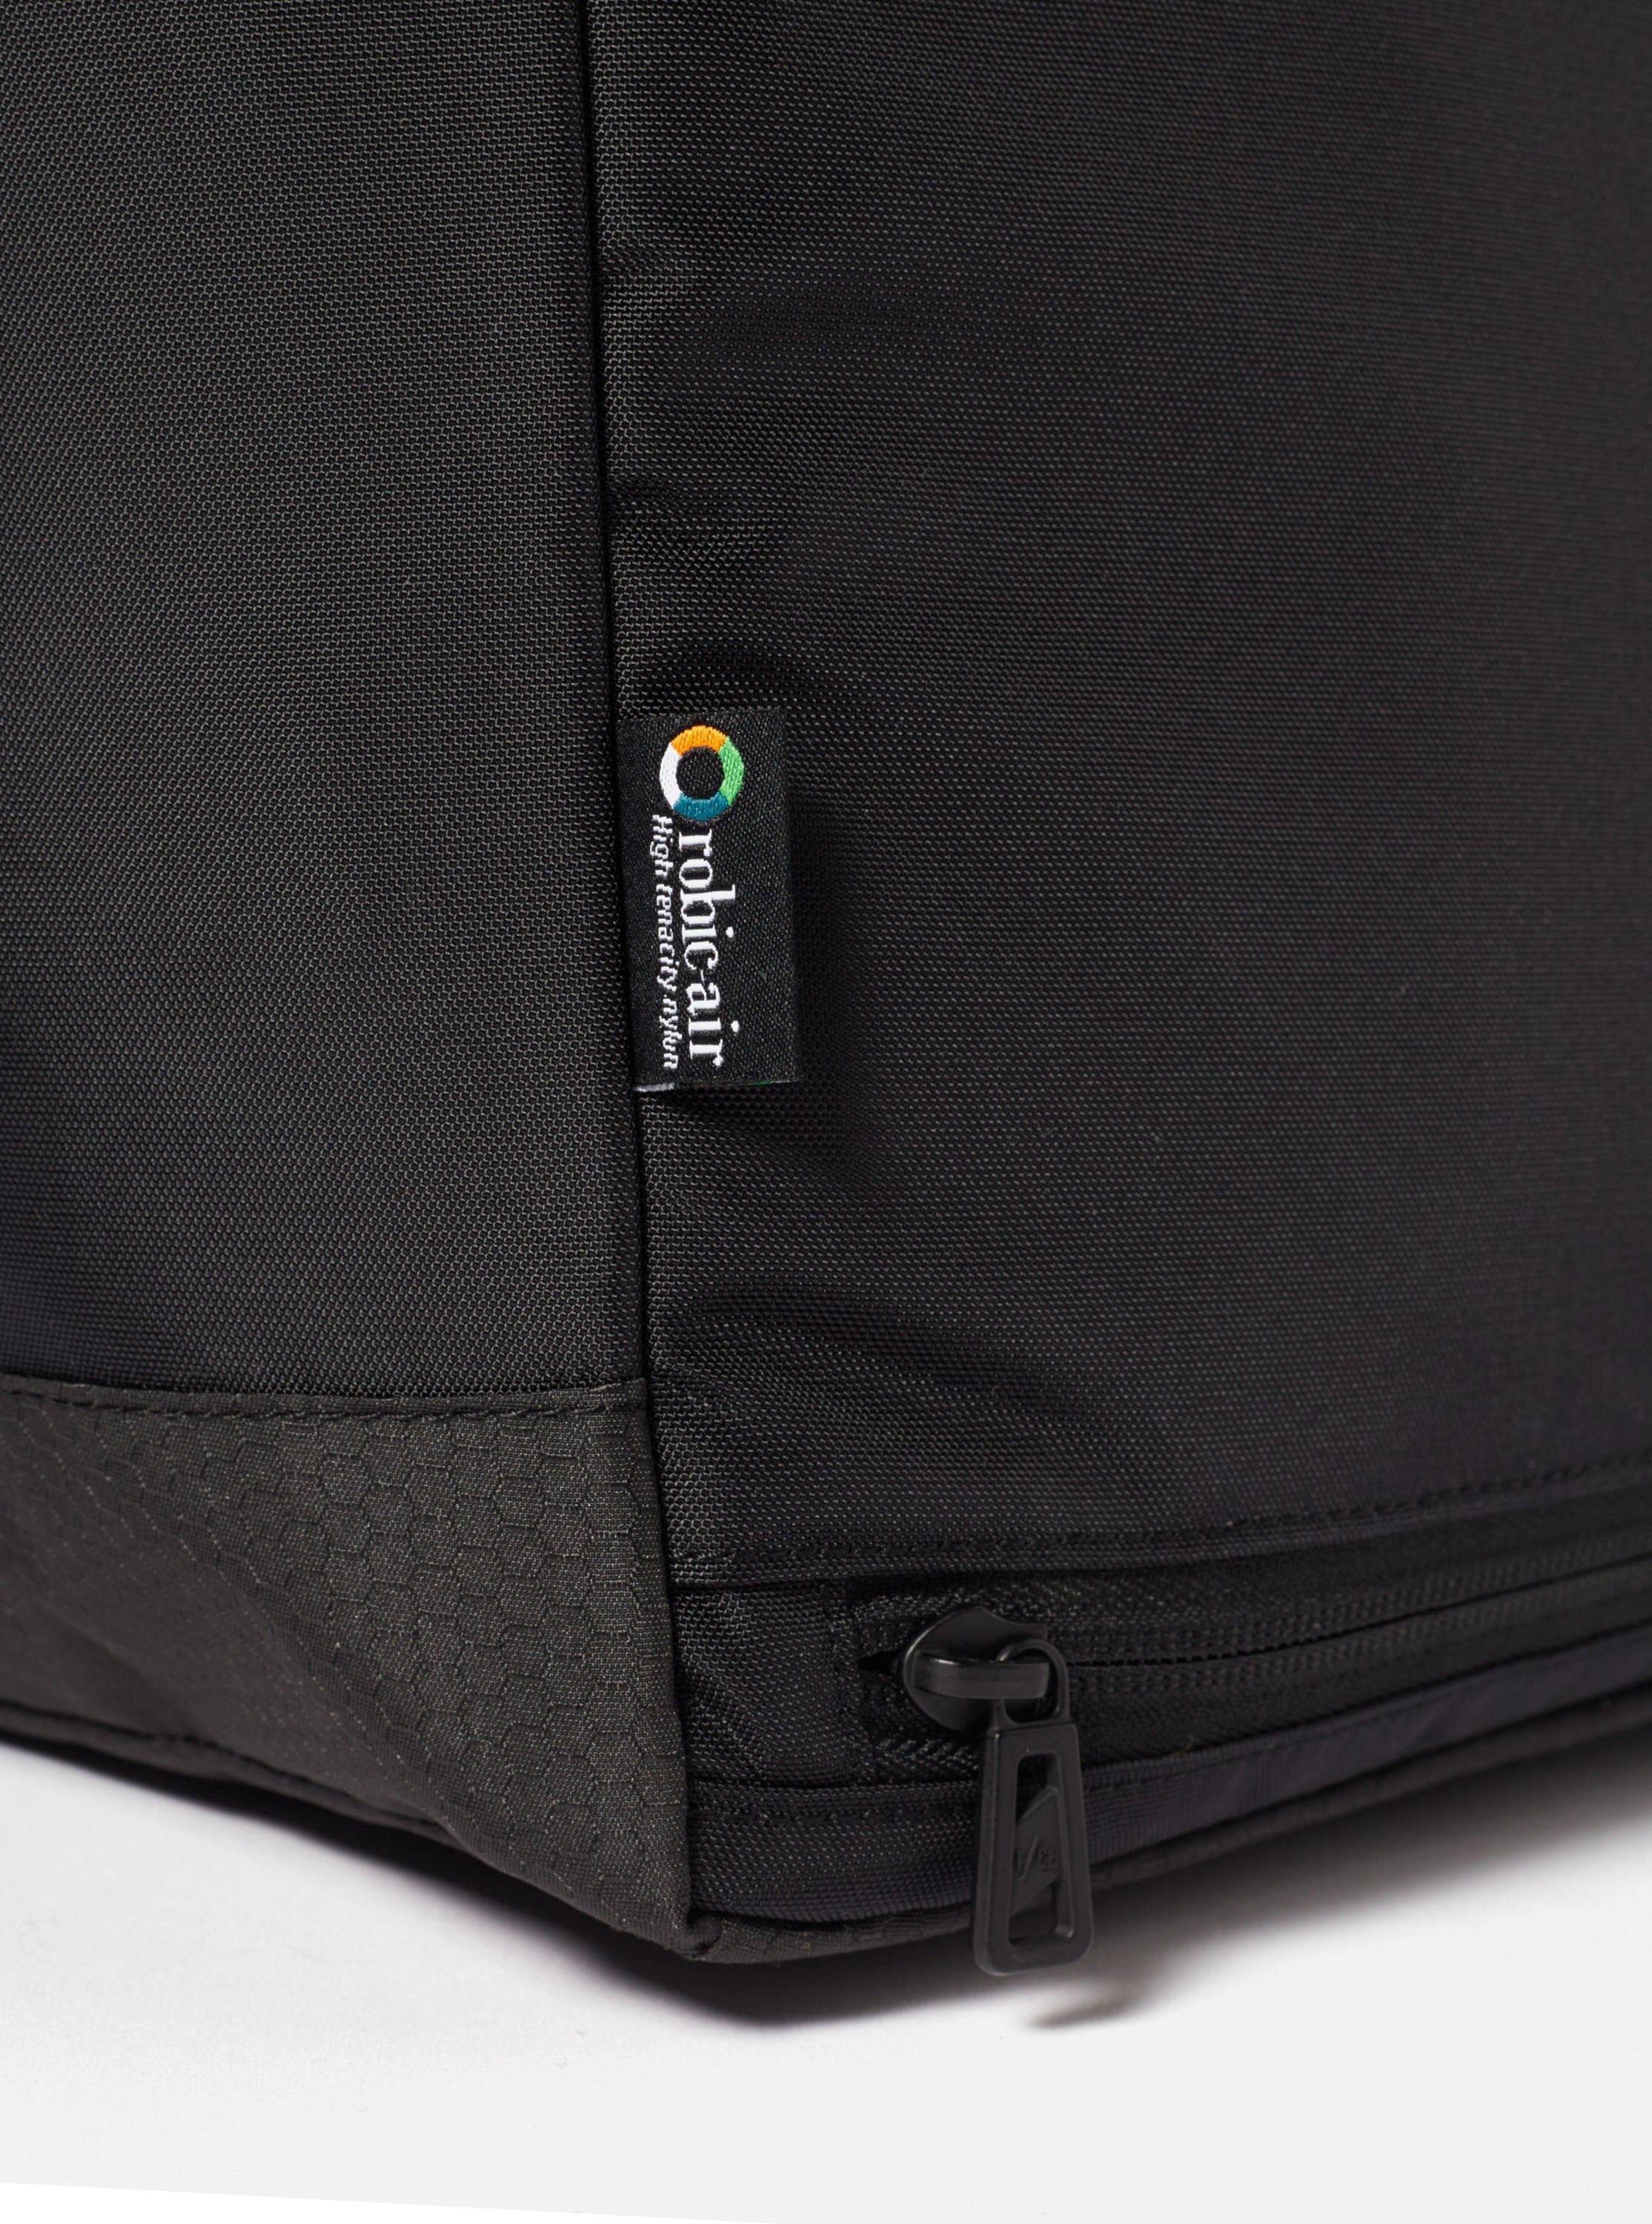 F/CE.® Lightweight Courier Shoulder Bag in Black